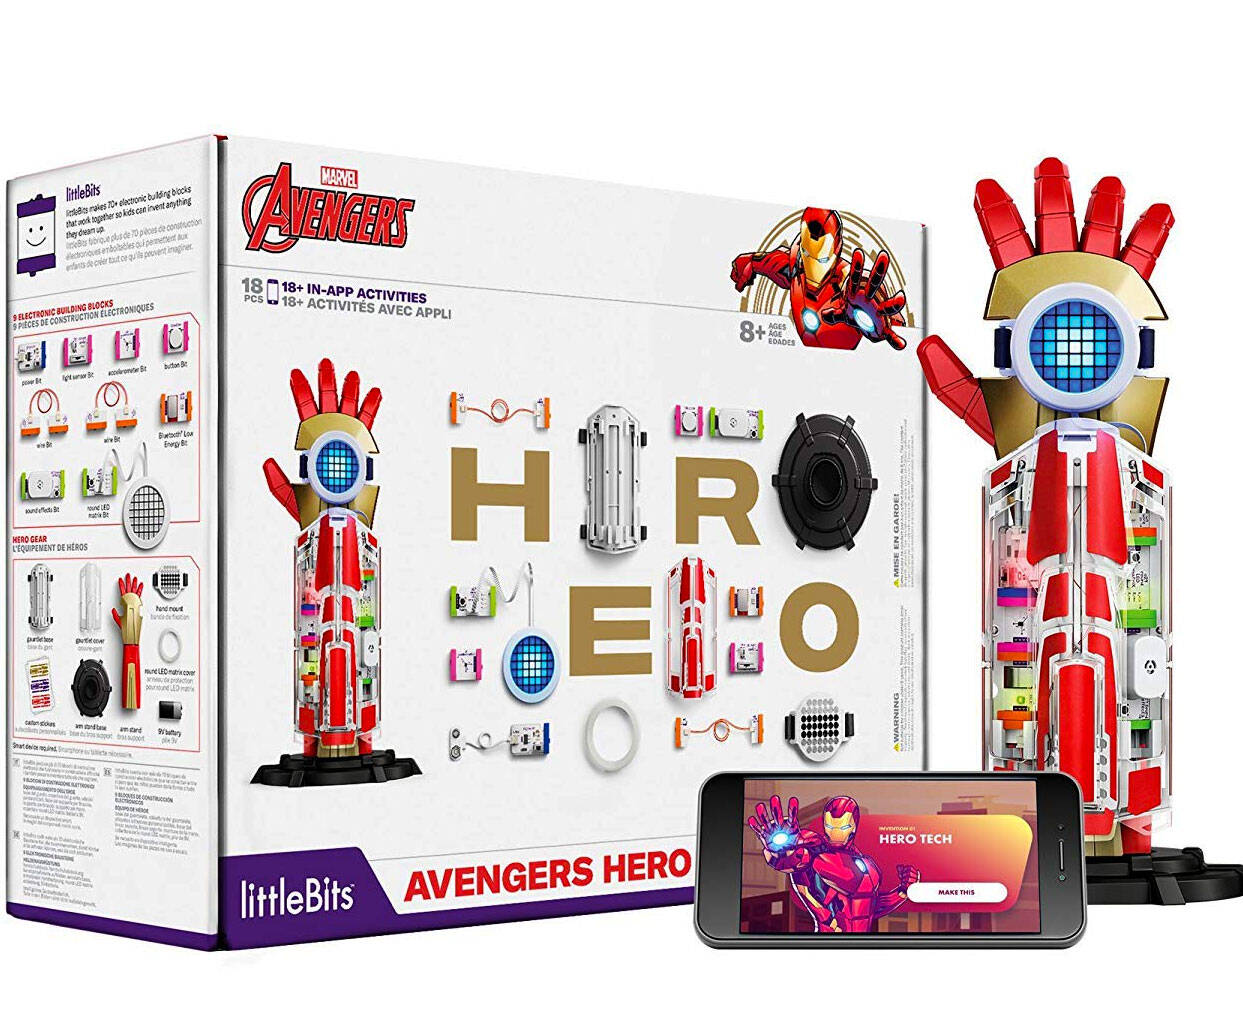 littleBits Avengers Hero Inventor Kit - //coolthings.us